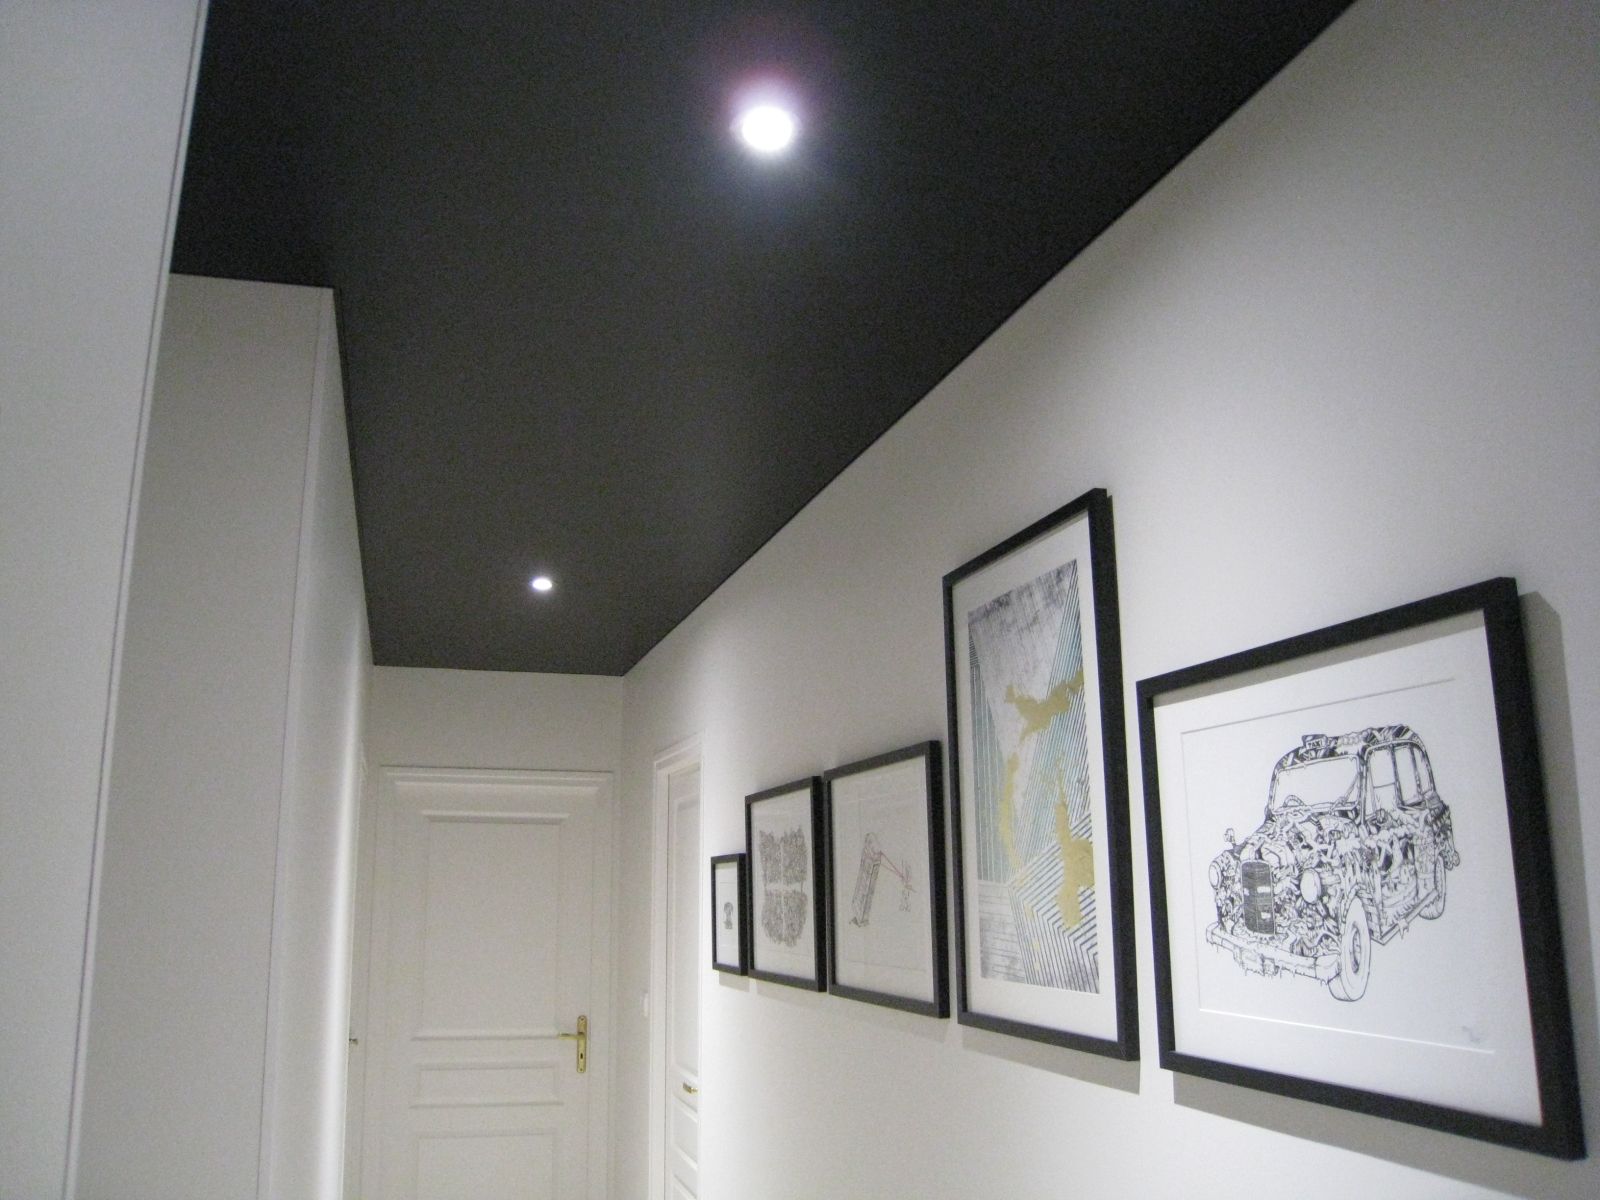 Глянцевый натяжной потолок фото с рисунком. глянцевые натяжные потолки (65 фото): плюсы и минусы, черные и бежевые модели с рисунком для спальни, цветные и однотонные варианты, отзывы